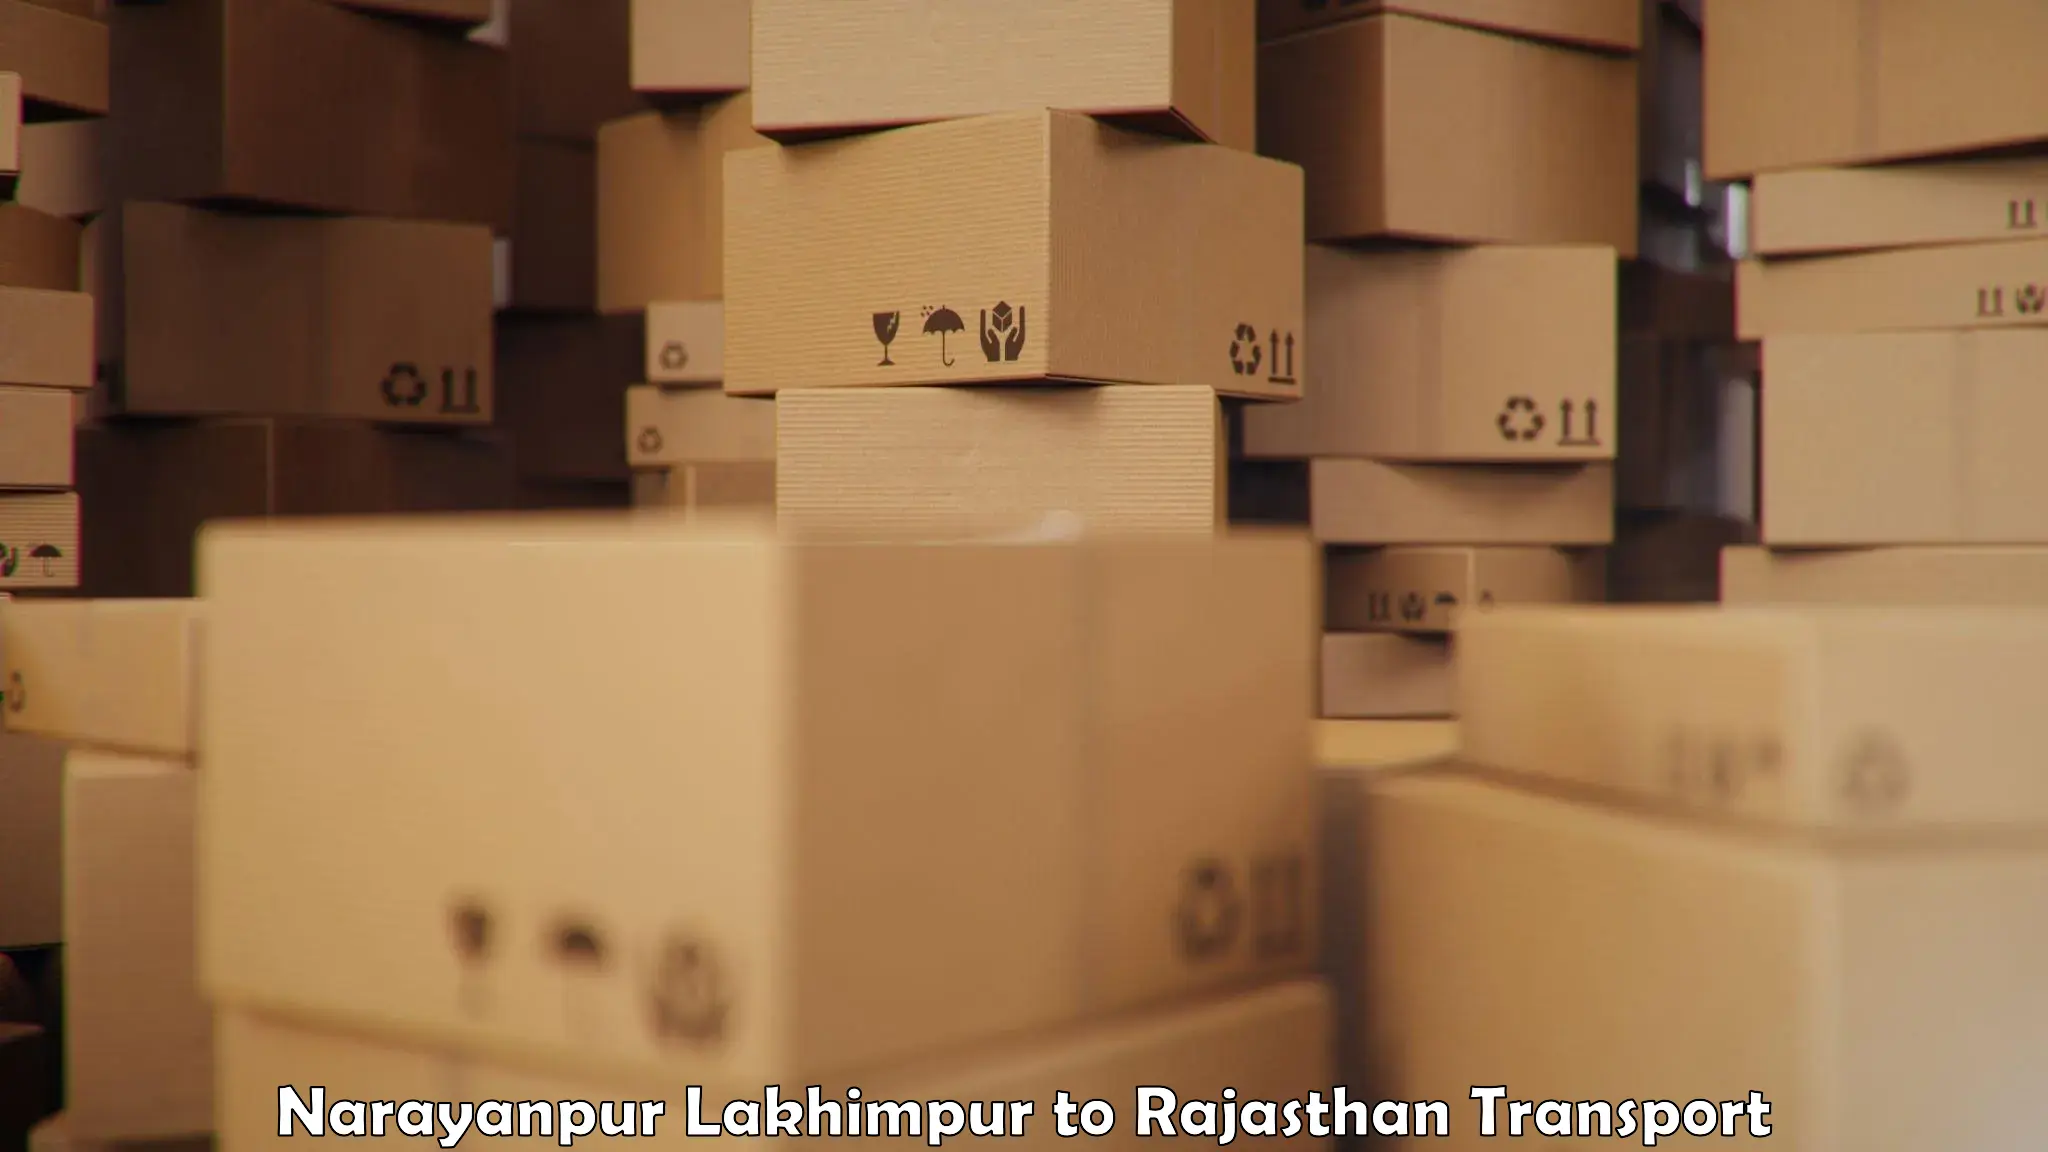 Cargo transportation services Narayanpur Lakhimpur to Beawar